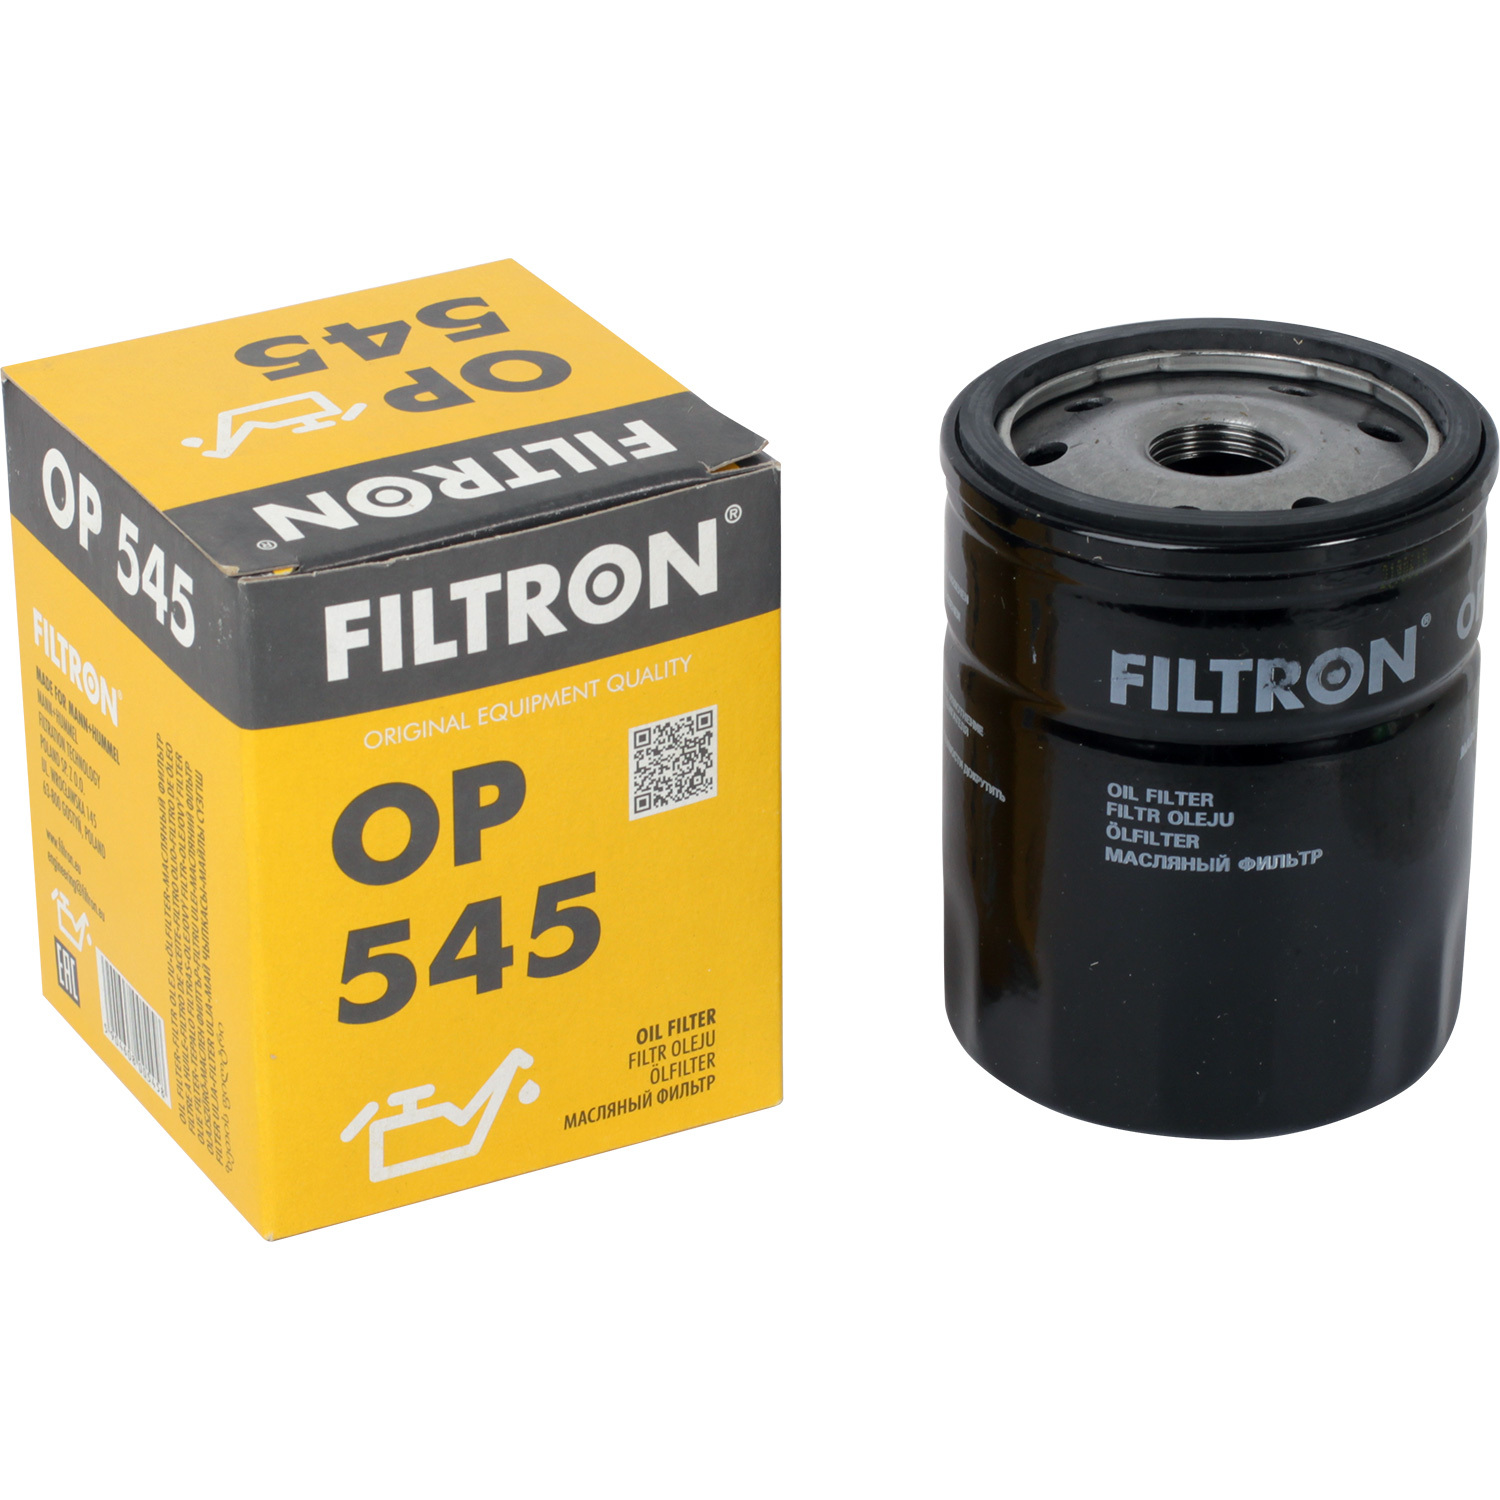 Фильтры Filtron Фильтр масляный Filtron OP545 фильтры filtron фильтр масляный filtron op6433